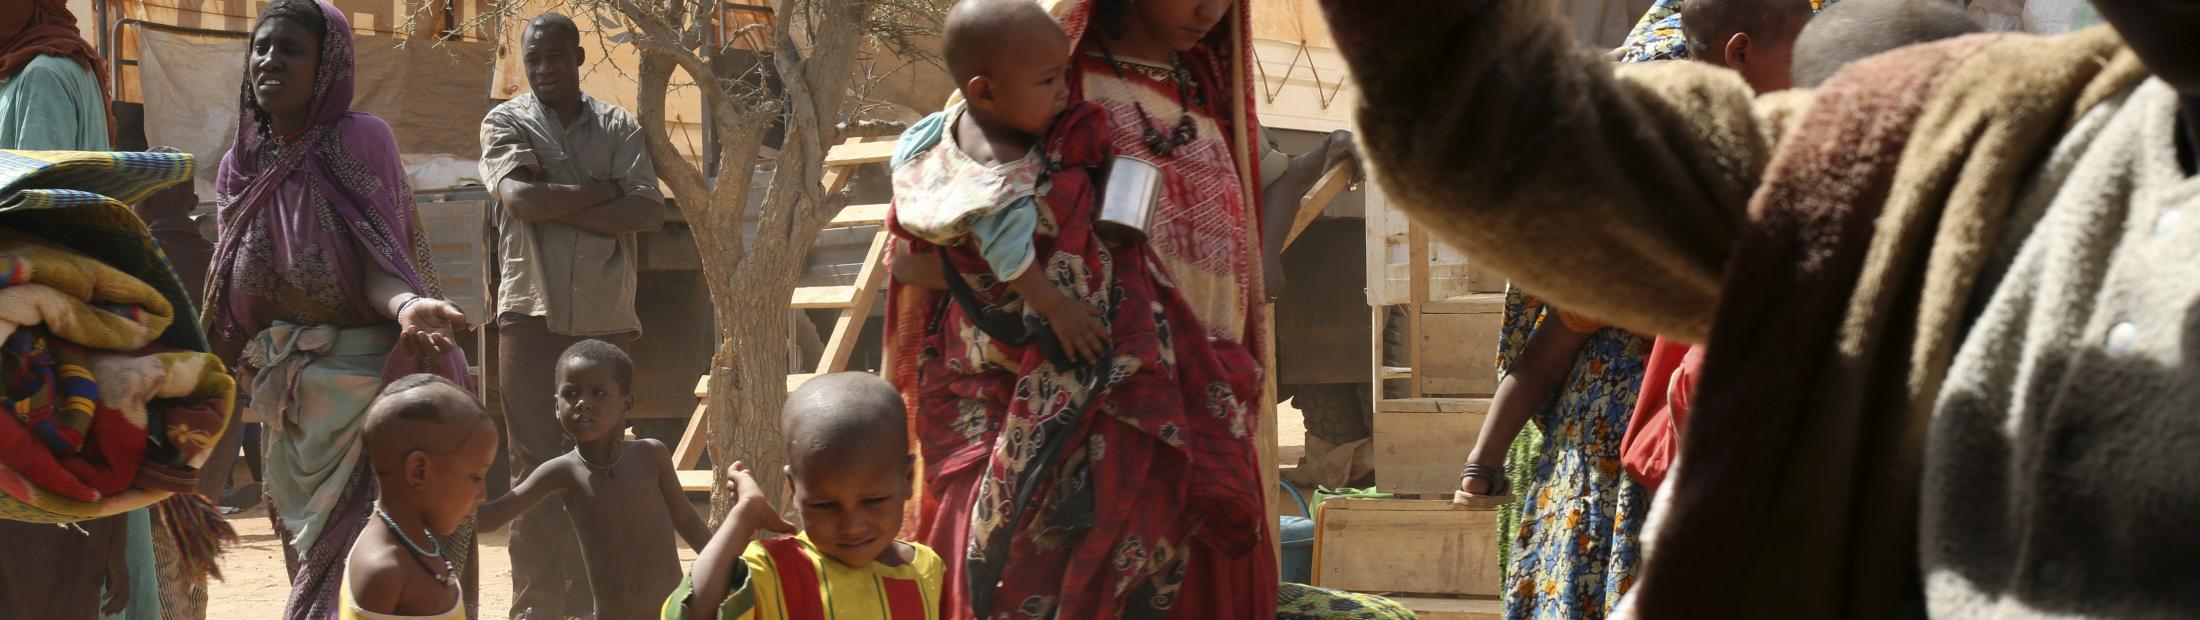 Malí: Mientras siguen llegando refugiados, algunos desplazados  internos vuelven a sus lugares de origen